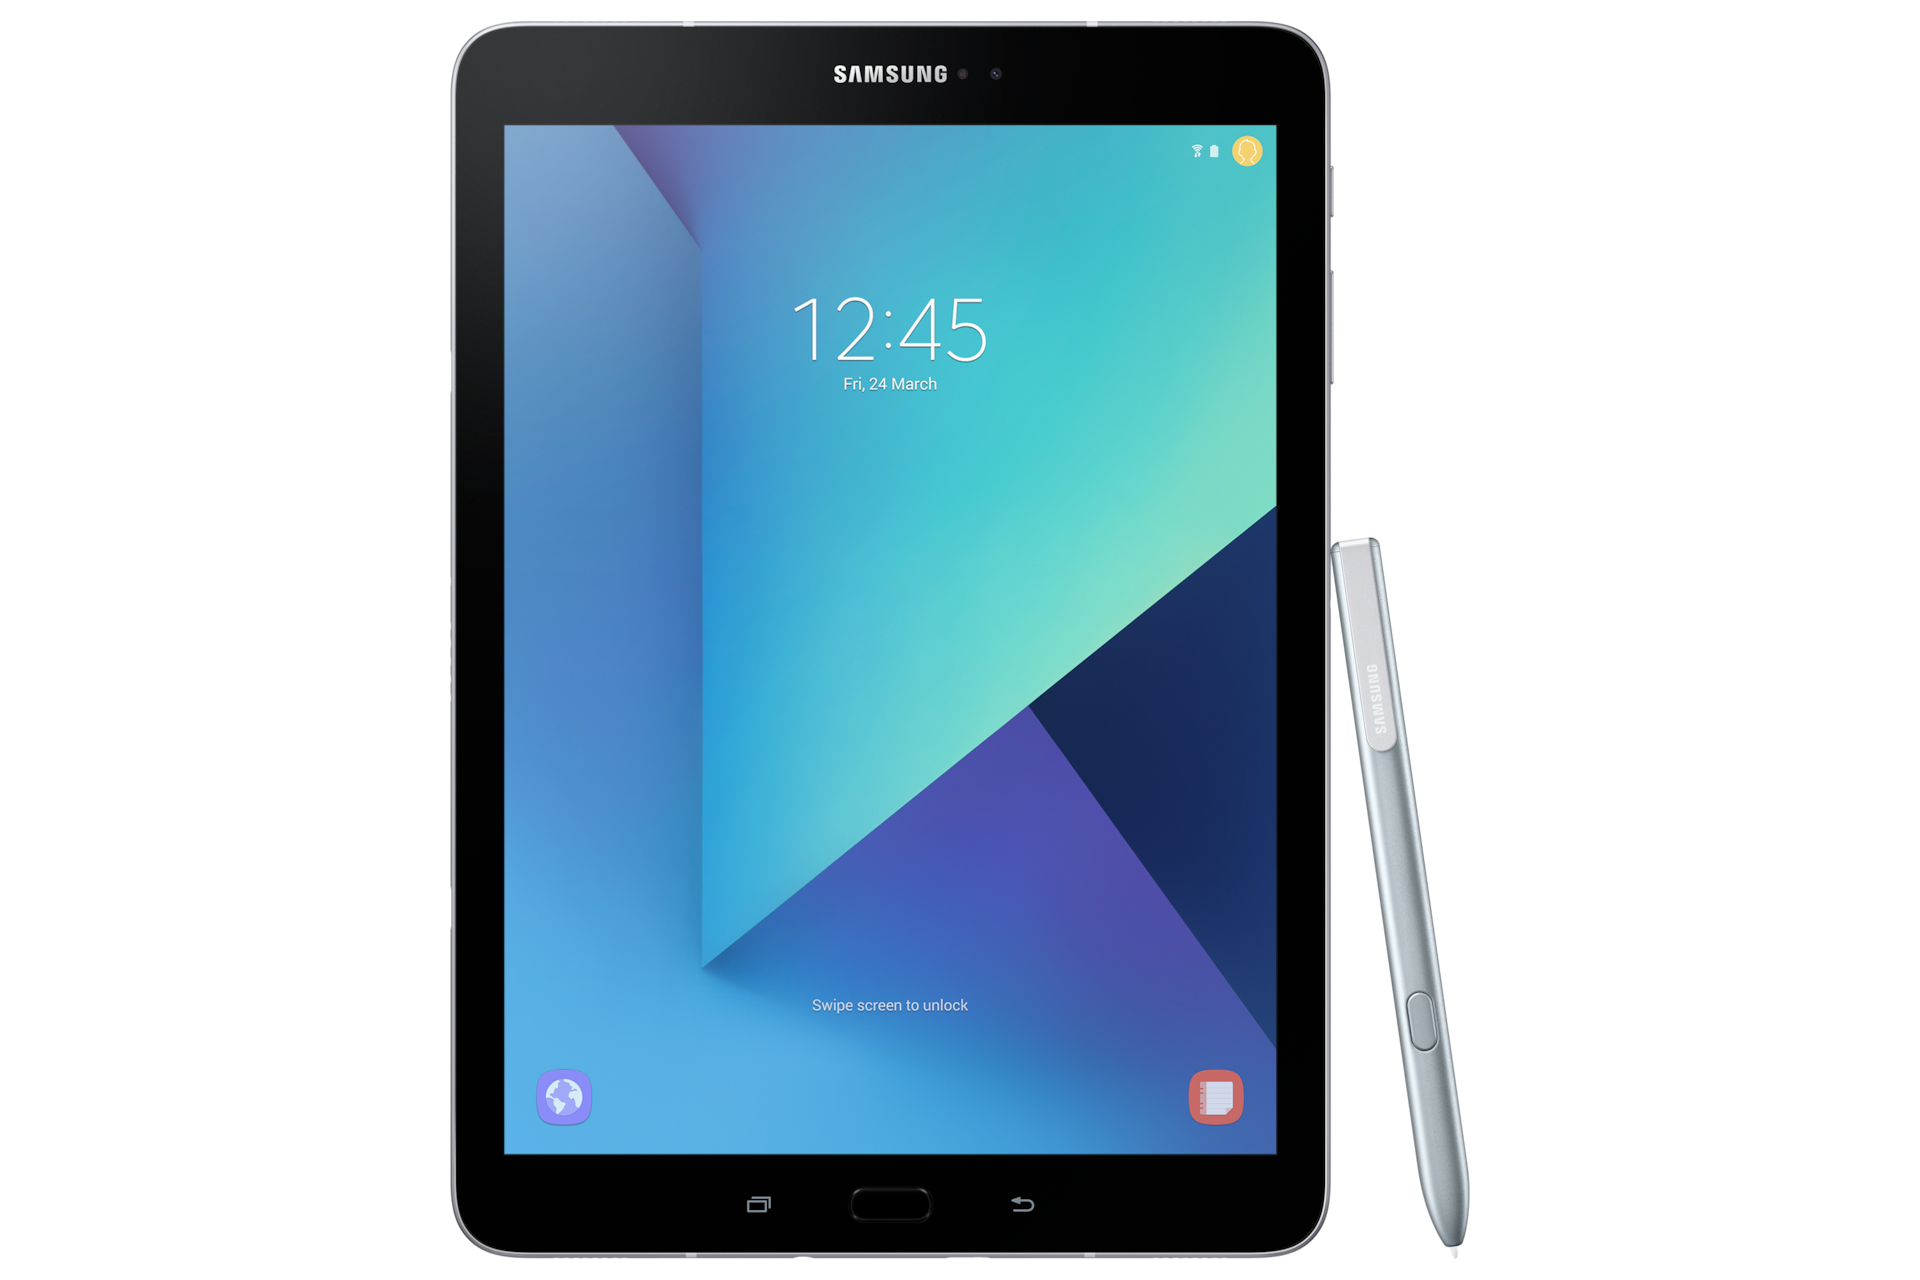 Caligrafía cobre cultura Tablet SAMSUNG Galaxy Tab S3:Rebajas 30% de Descuento | Samsung España